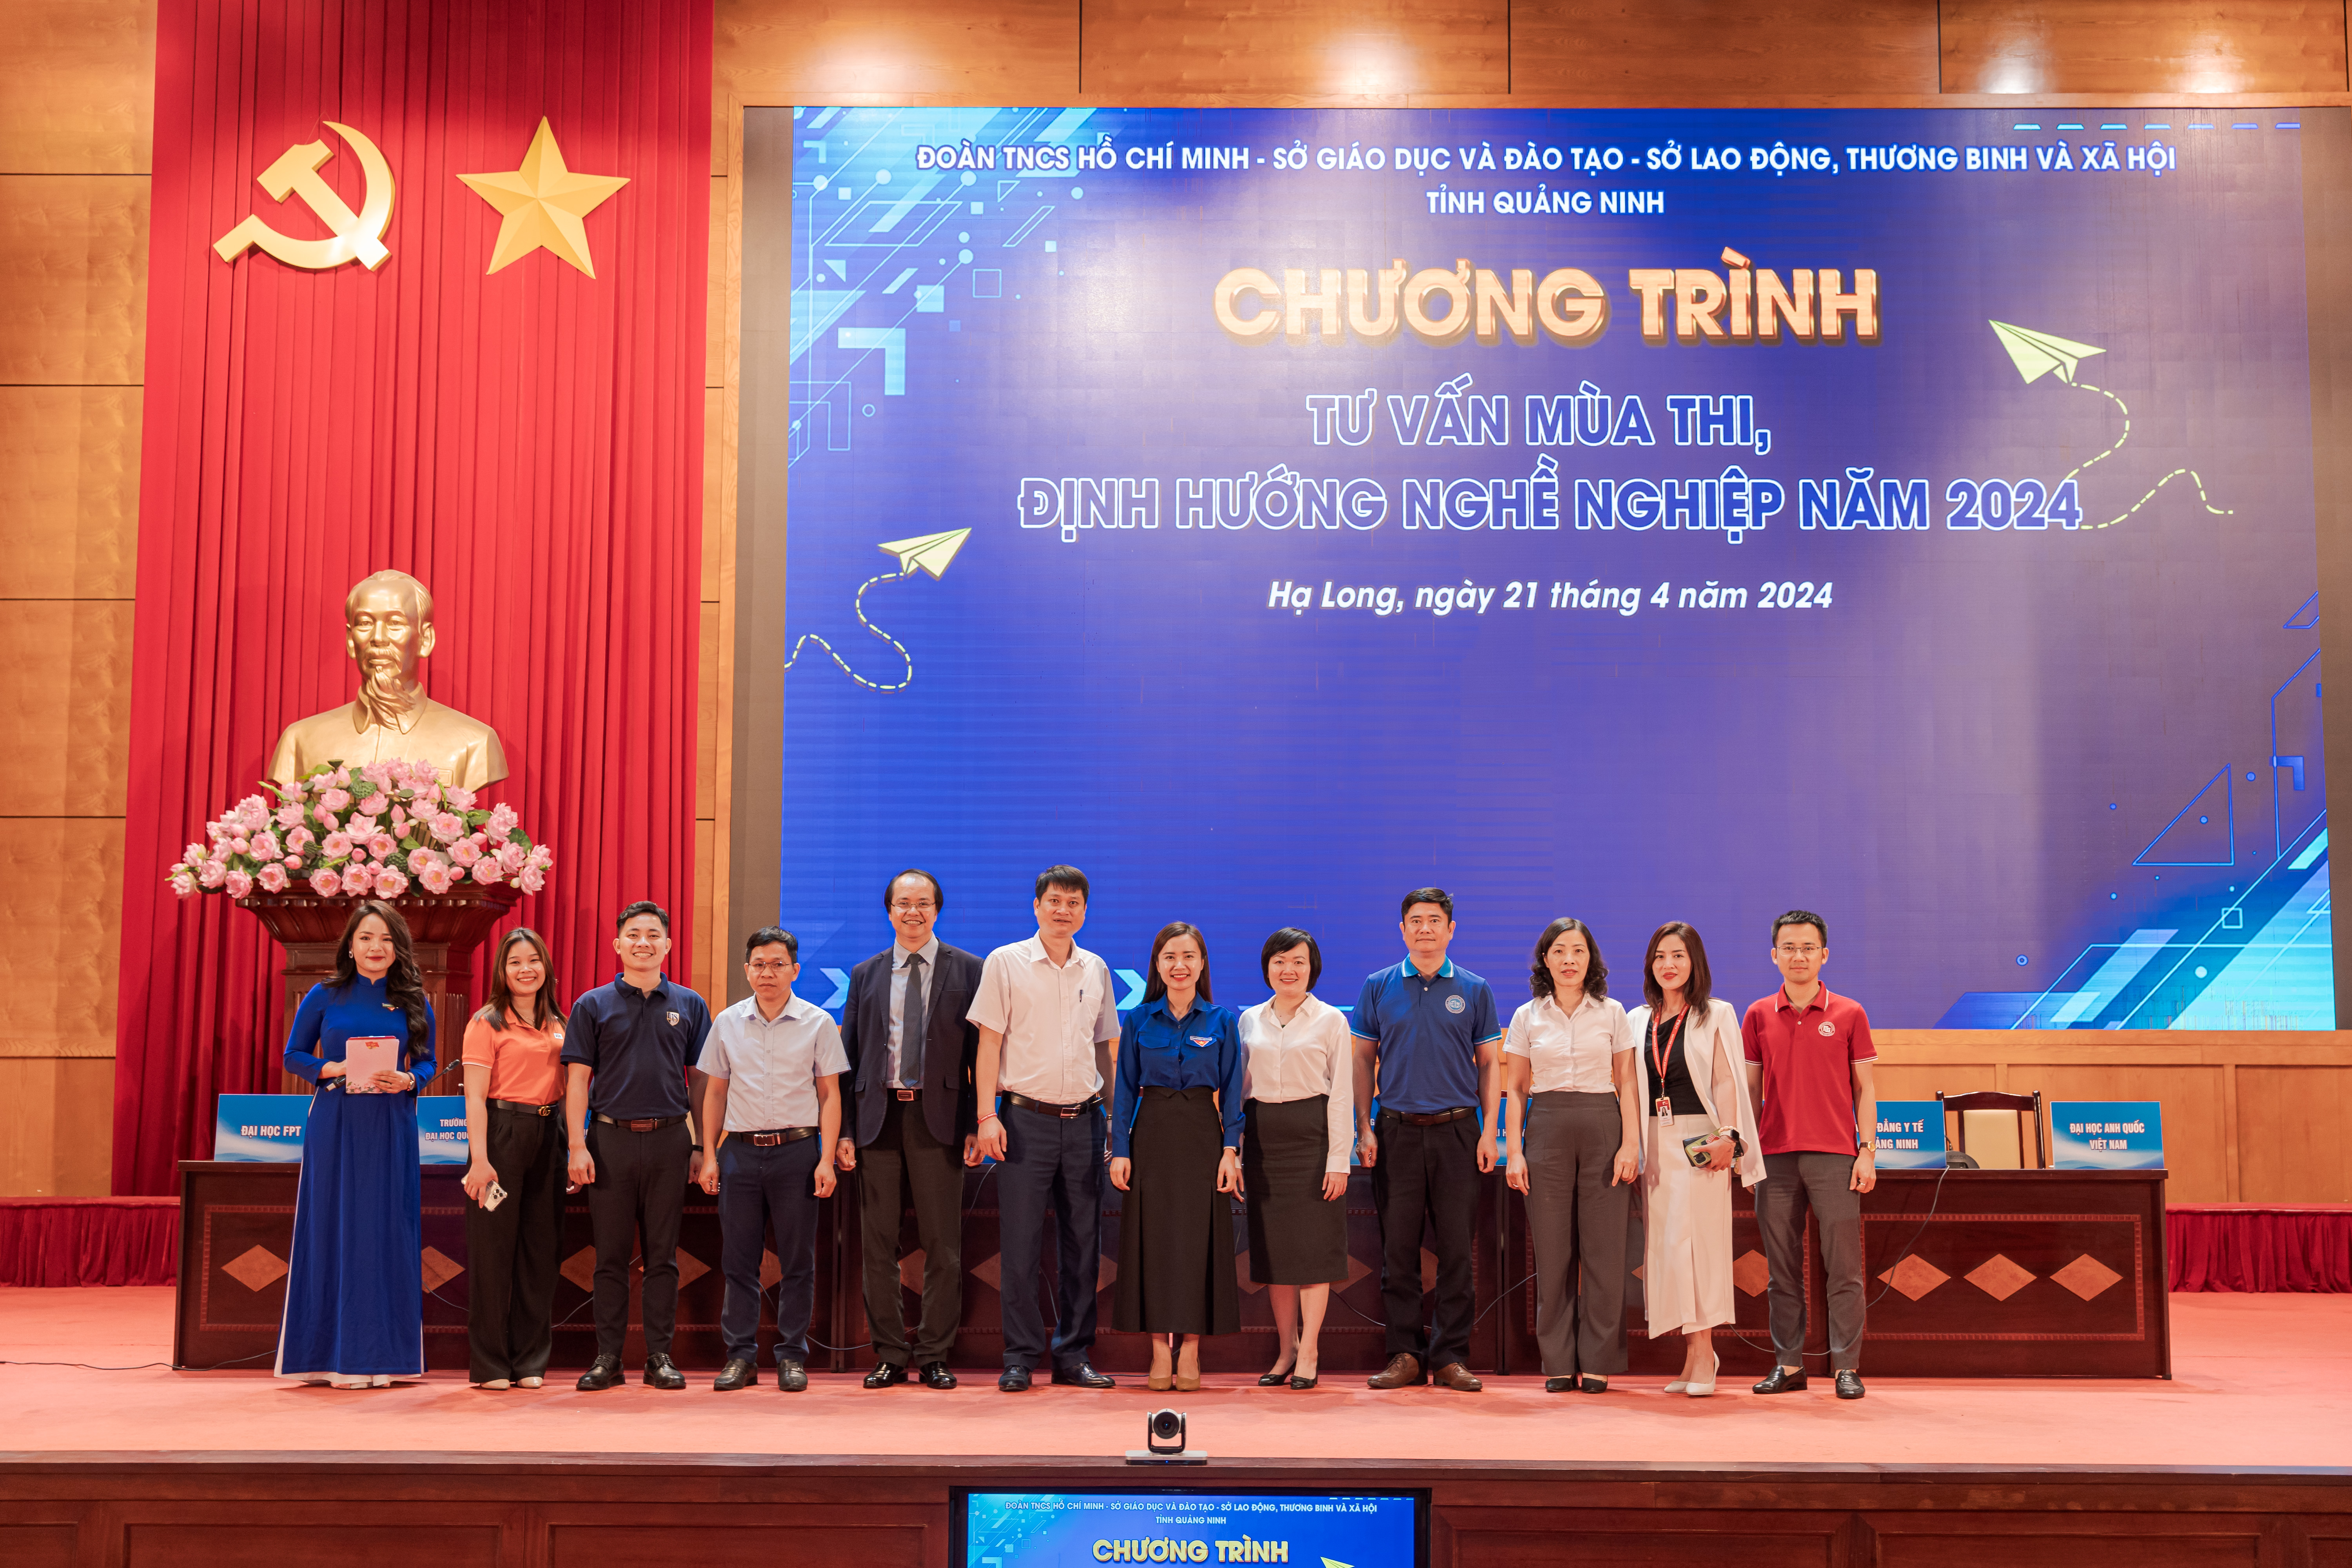 Trường Đại học Công nghiệp Quảng Ninh tham gia chương trình Tư vấn mùa thi, định hướng nghề nghiệp năm 2024